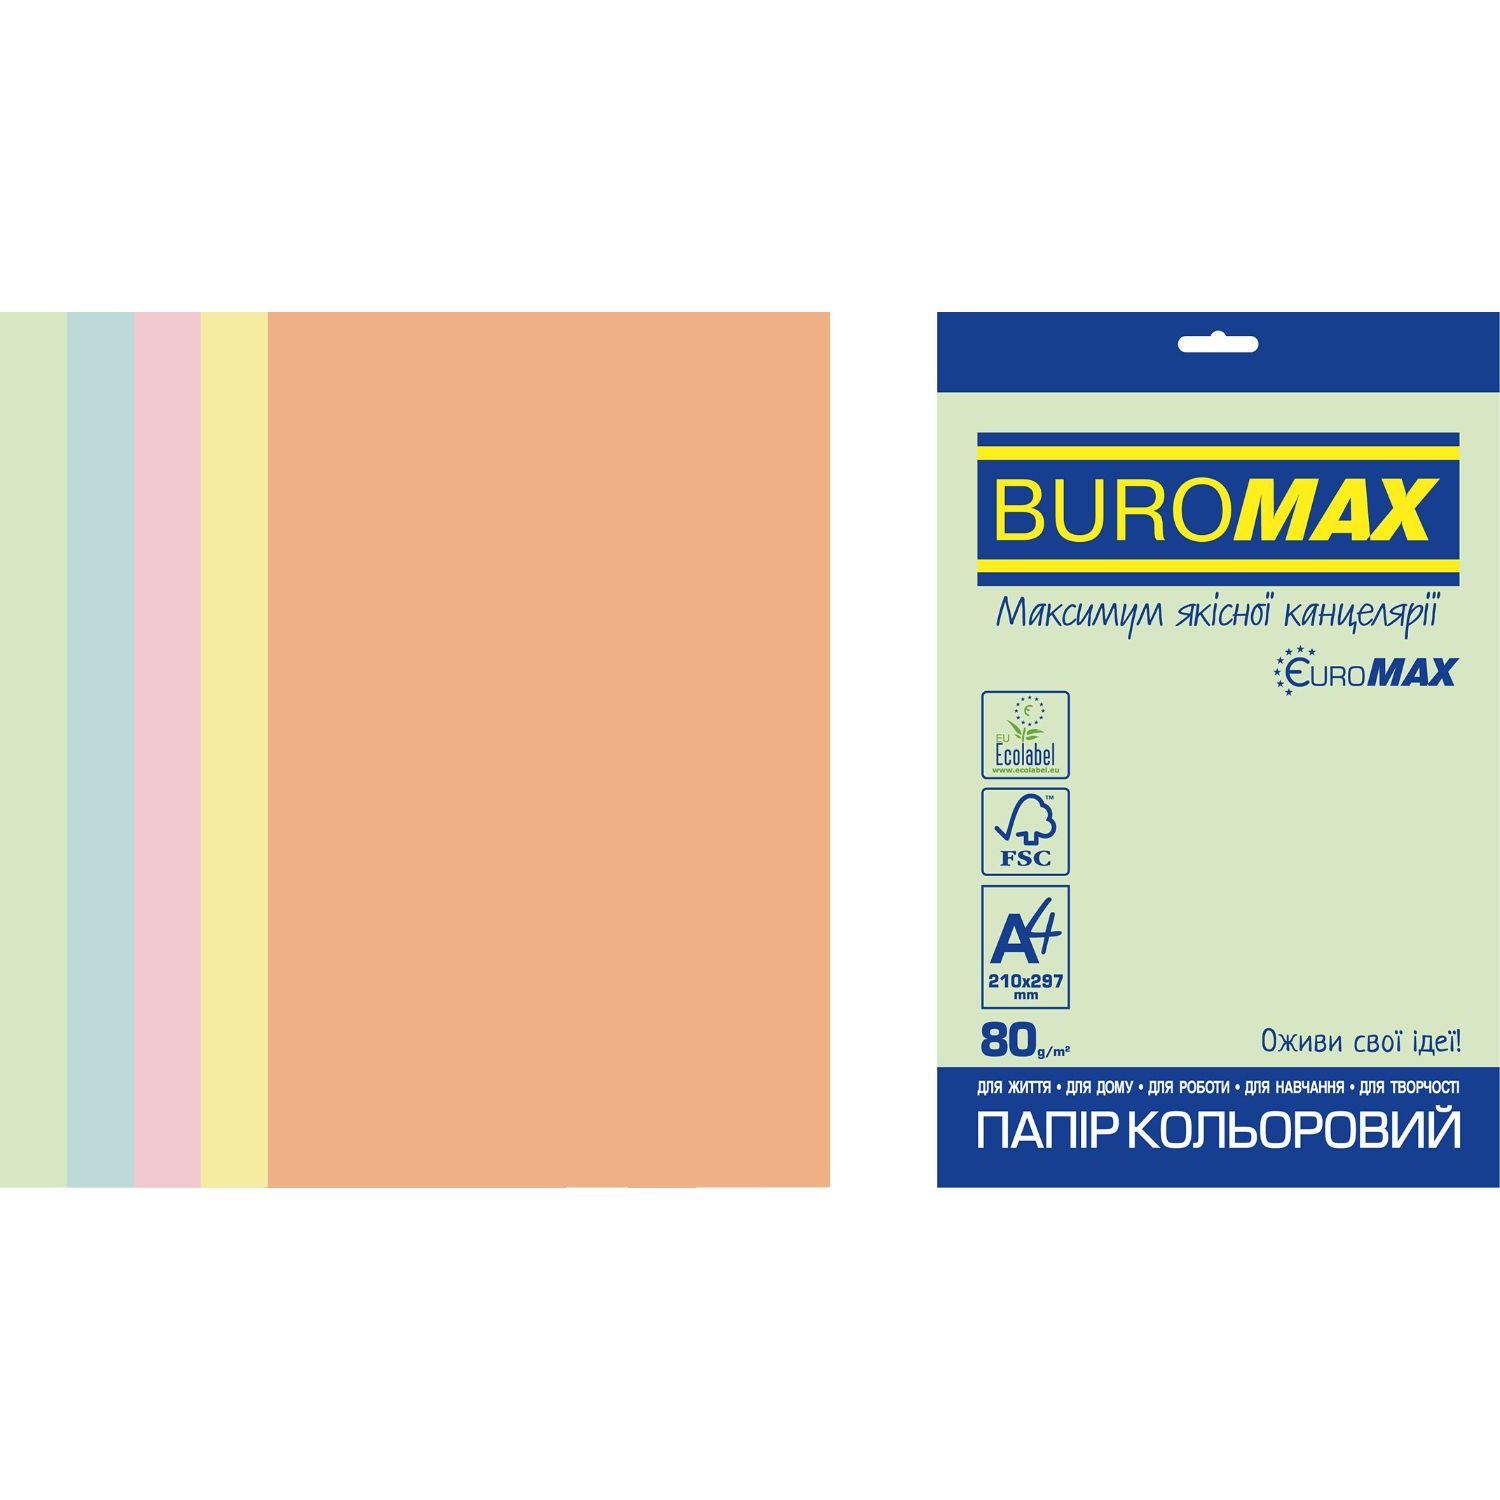 Photos - Office Paper Buromax Папір кольоровий  Euromax Pastel 250 аркушів 5 кольорів (BM.2721225 